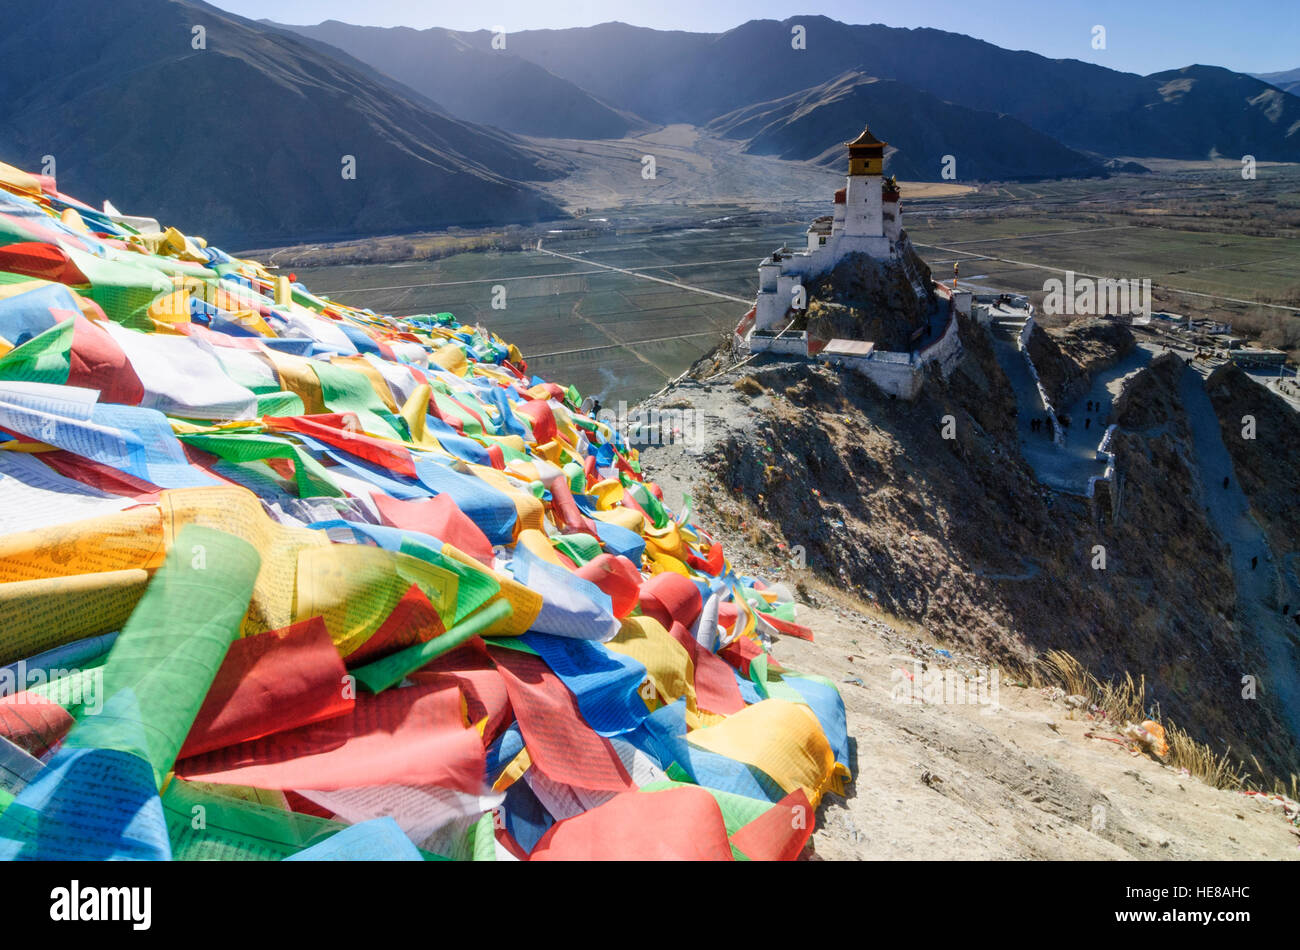 Tsetang : Château Yumbulagang, collines couvertes de drapeaux de prières, Tibet, Chine Banque D'Images